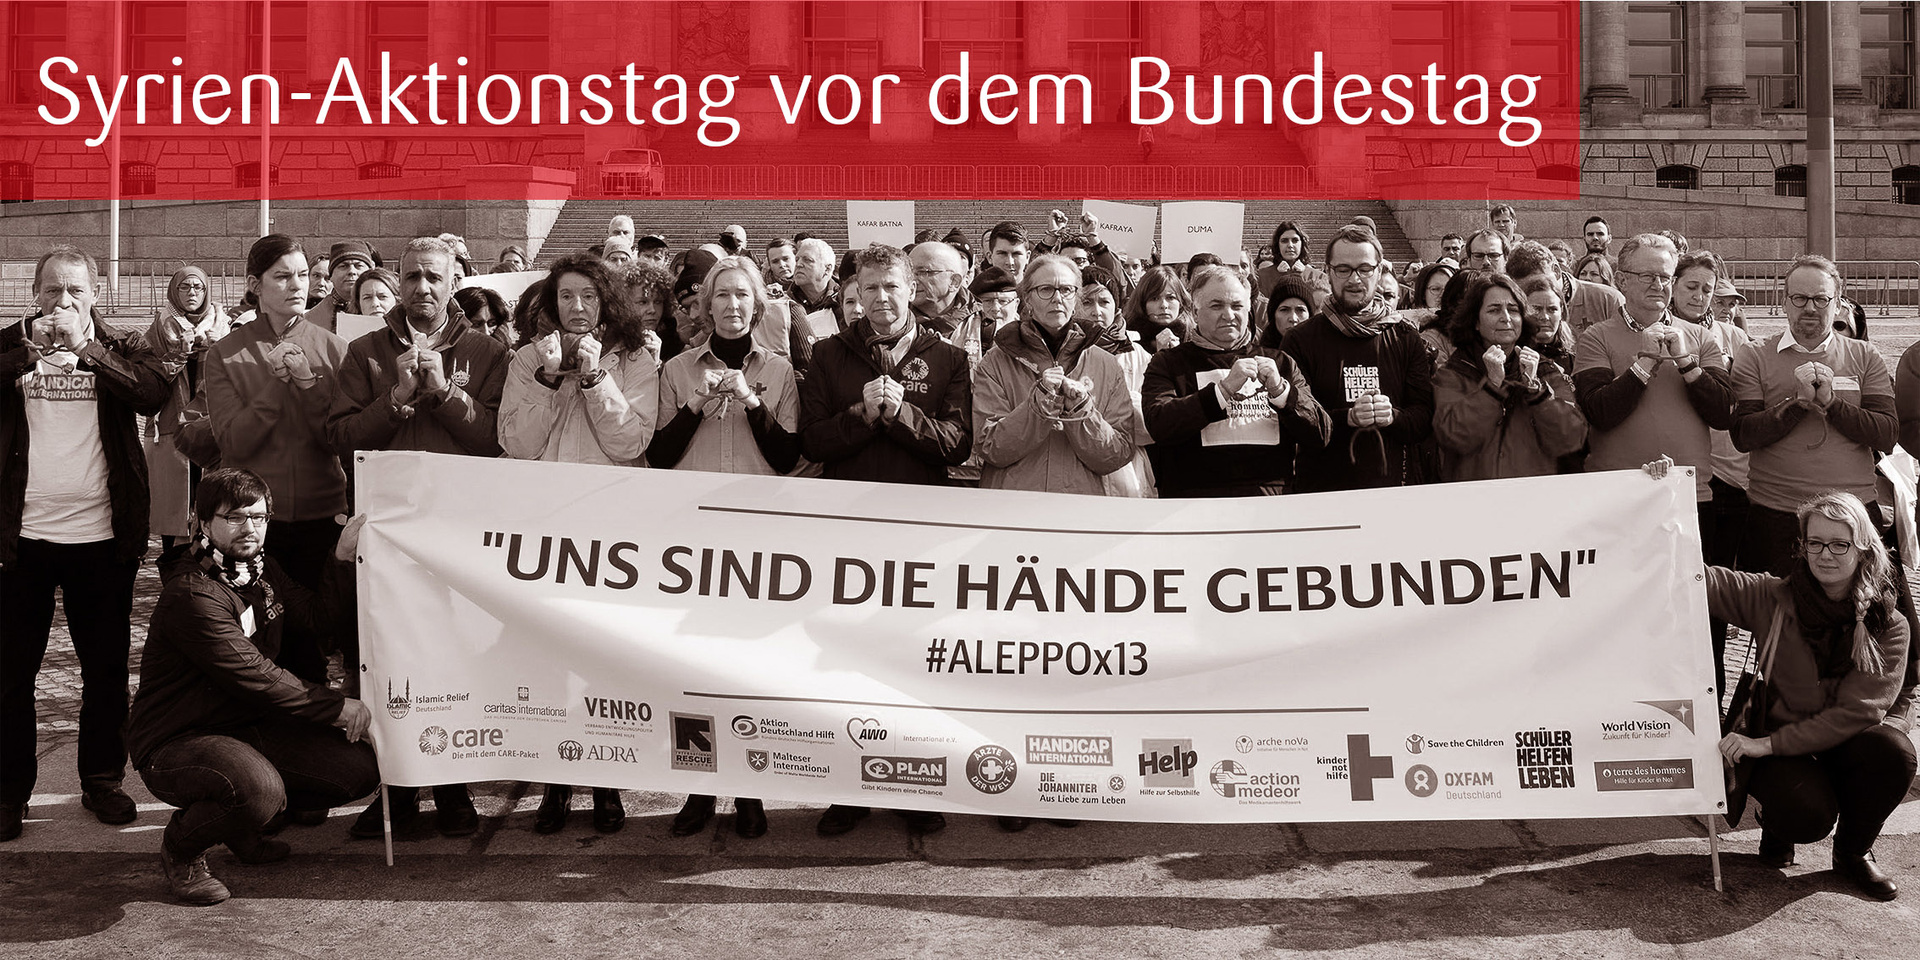 Syrien-Aktionstag vor dem Bundestag